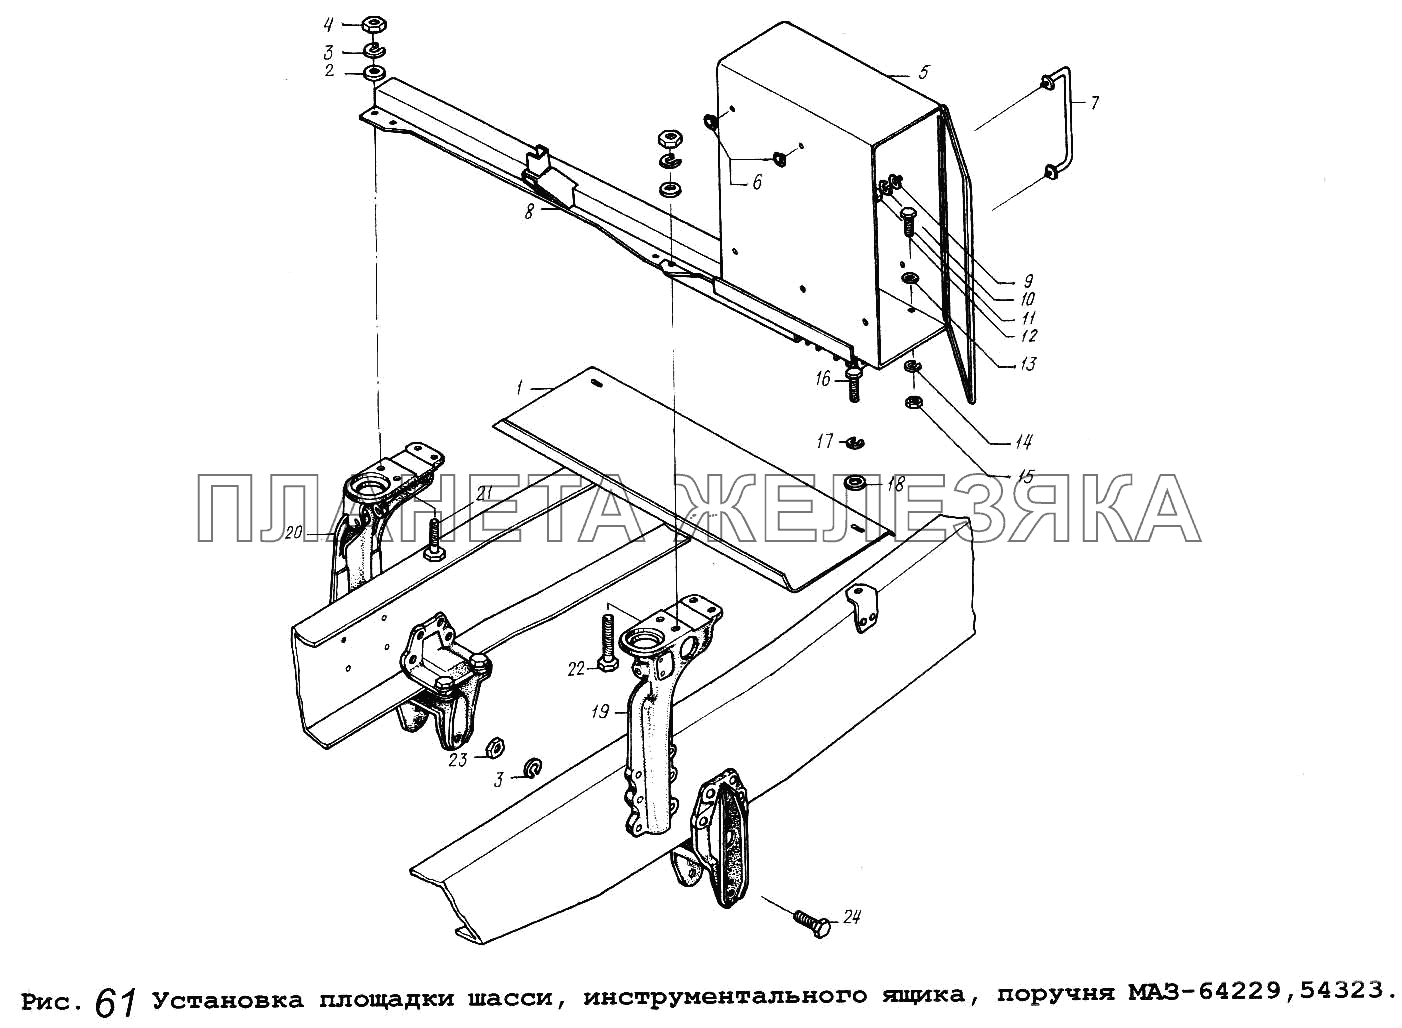 Установка площадки шасси, инструментального ящика, поручня МАЗ-64229,54323 МАЗ-64229